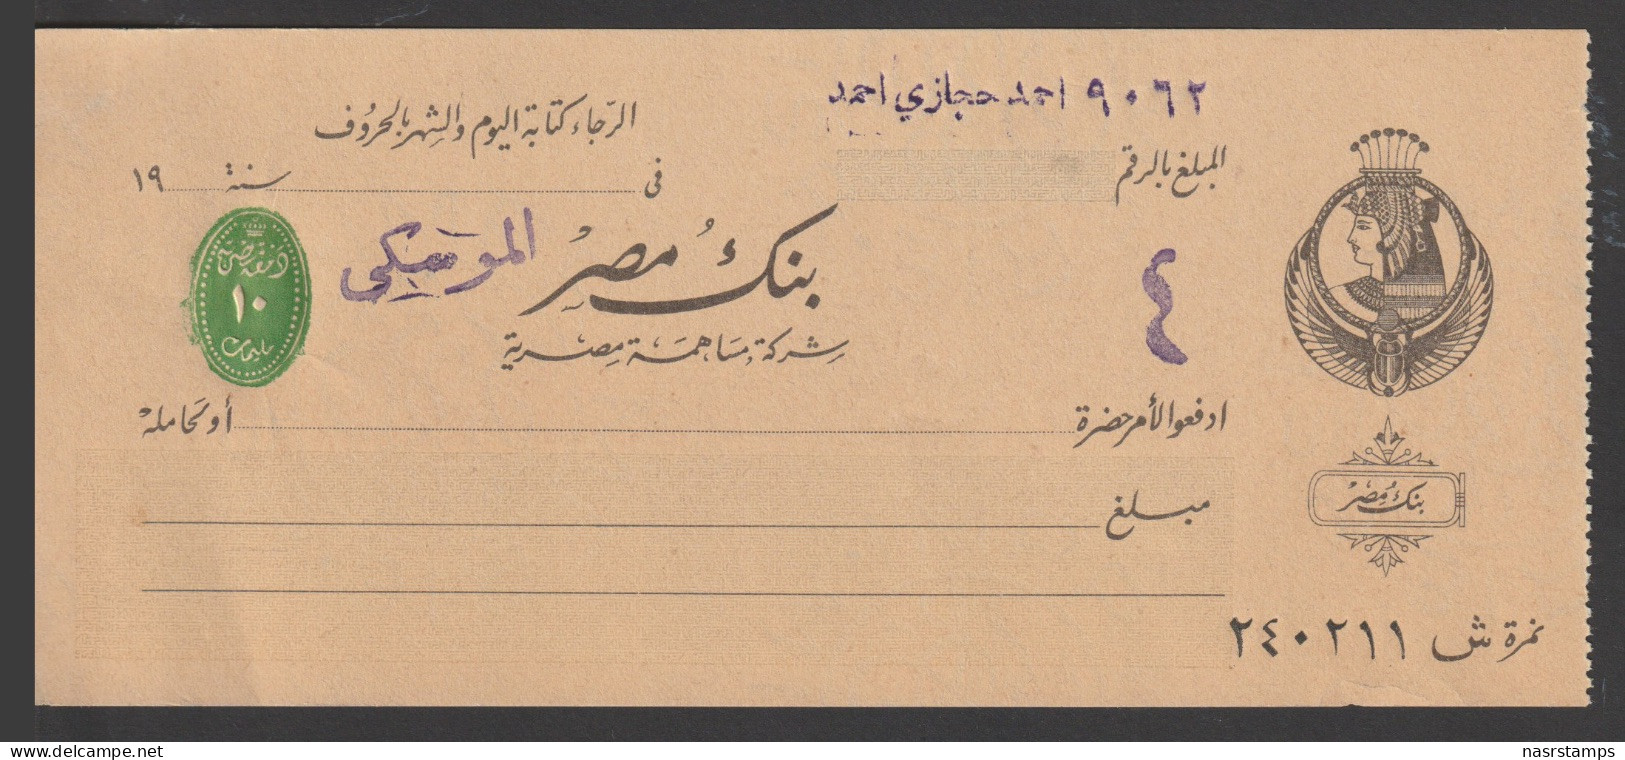 Egypt - RARE - Old Check - MISR Bank, Mosky - Cairo - Briefe U. Dokumente